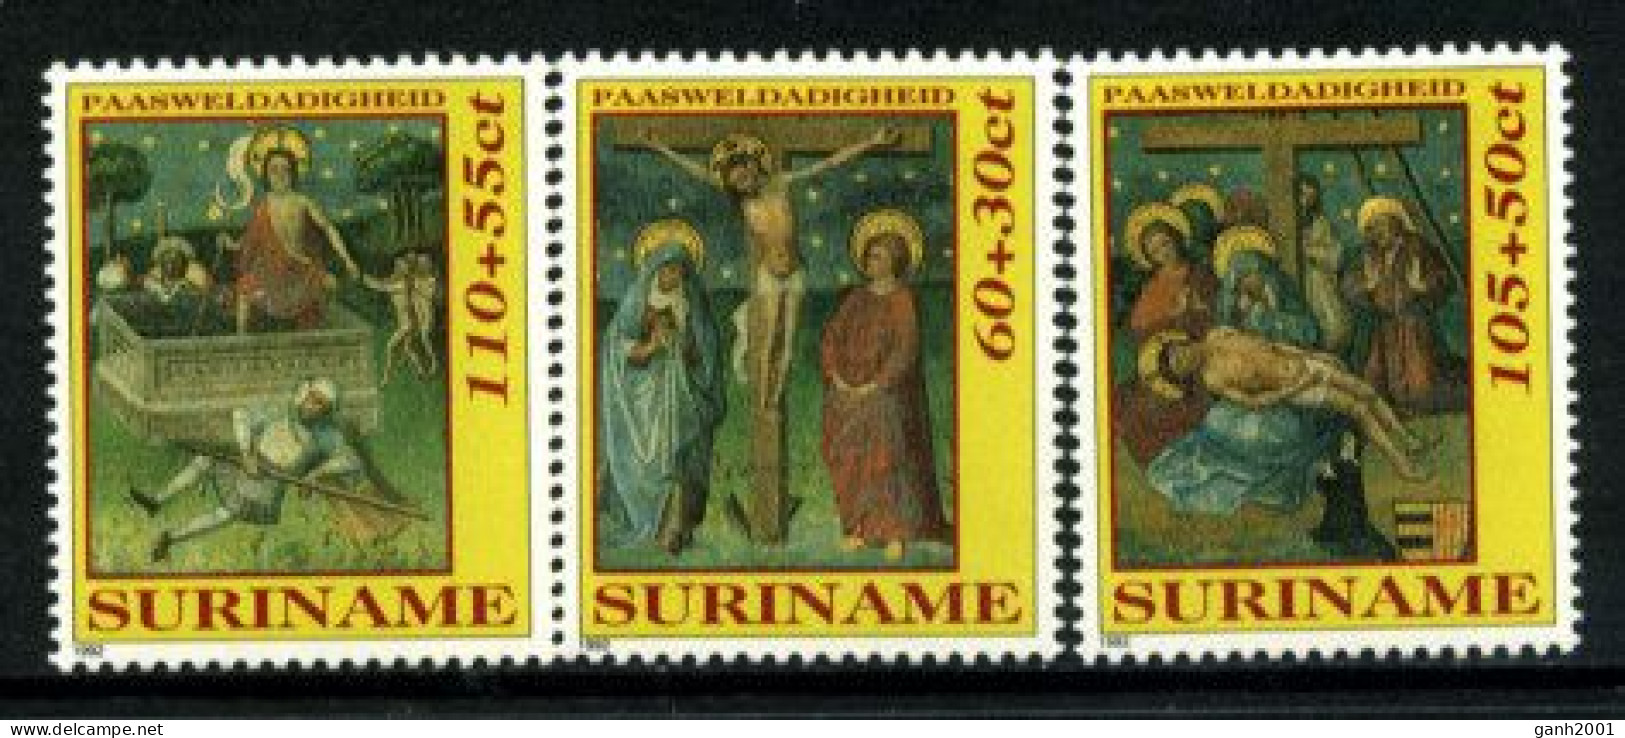 Suriname 1992 / Easter Religious Art MNH Pascuas Arte Religioso Ostern Kunst / 0435  38-33 - Easter